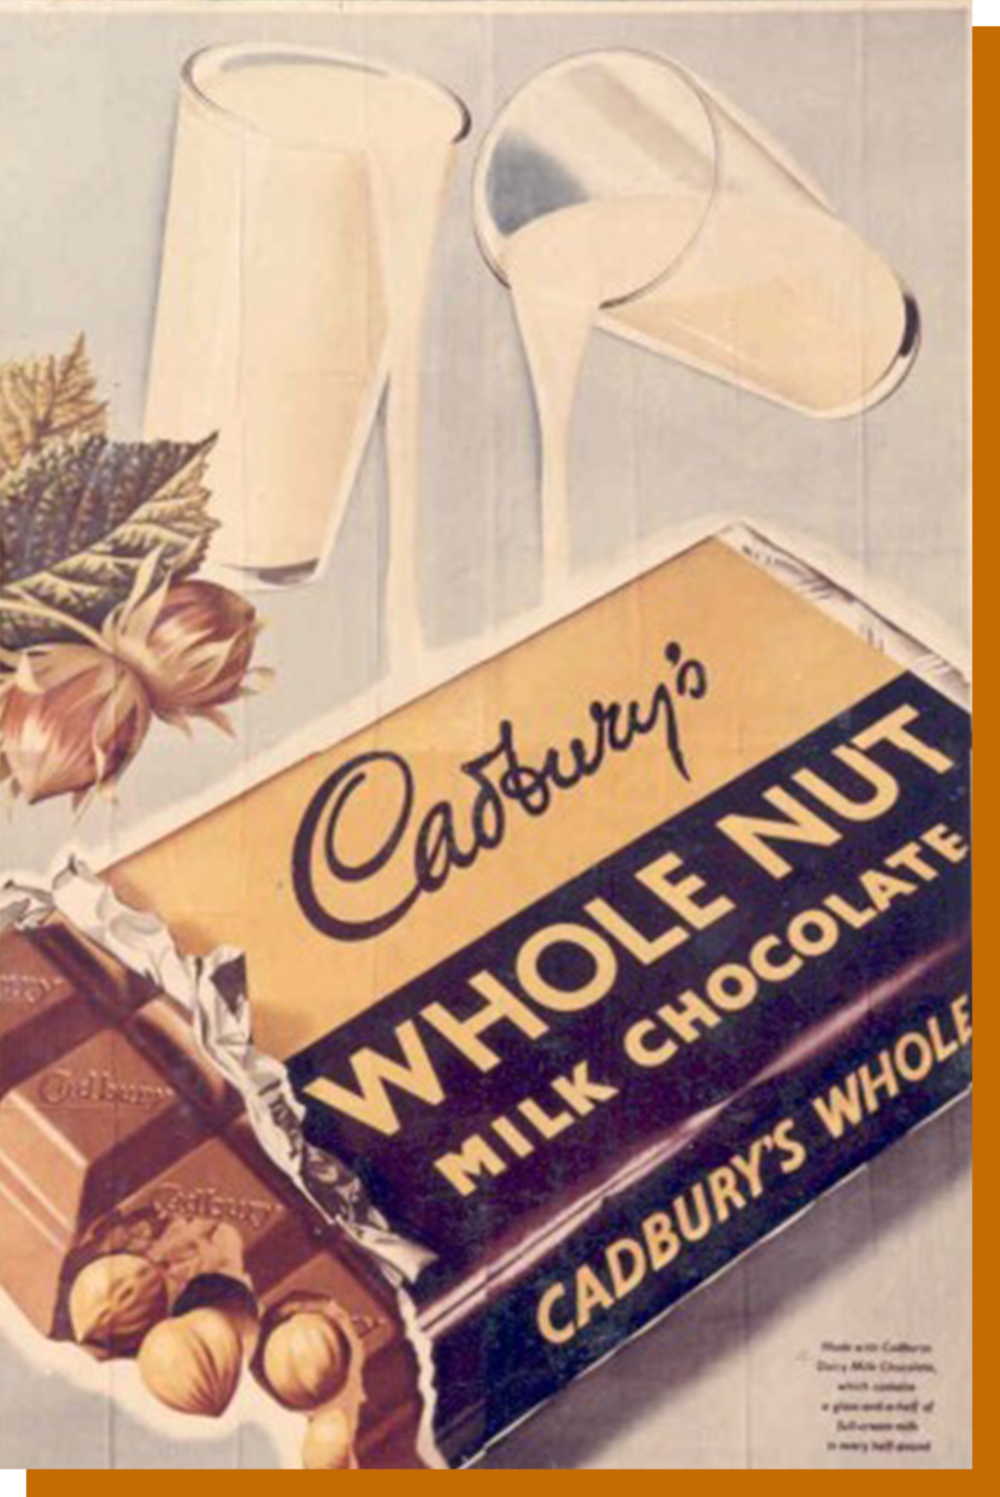 1955 年的吉百利巧克力广告。© dailyedge.ie